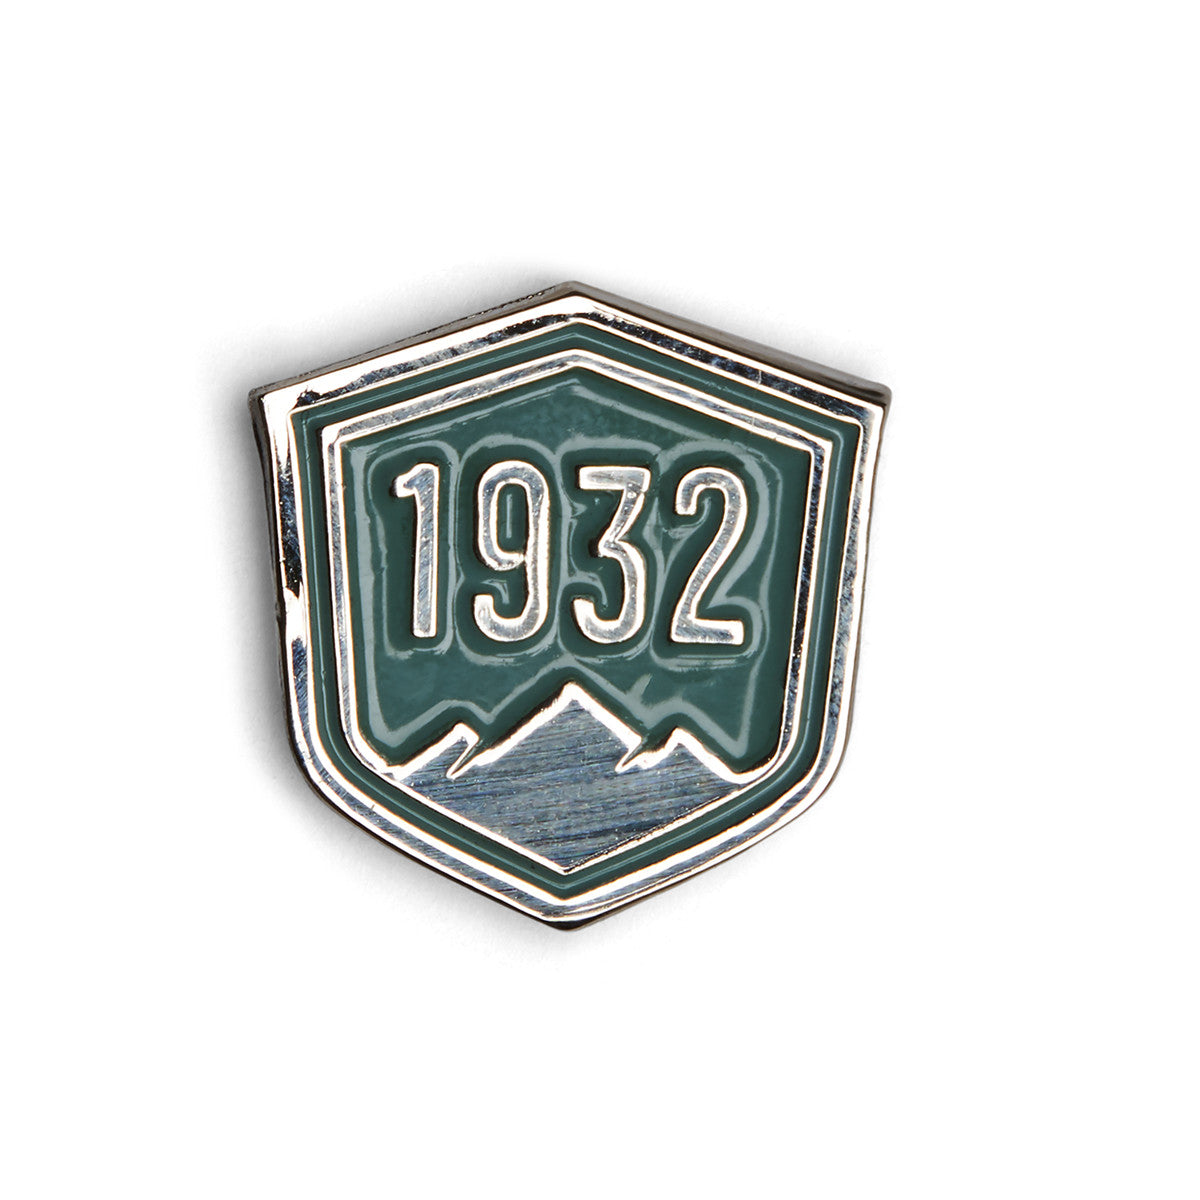 DANNER - Pin, Enamel 1932 badge